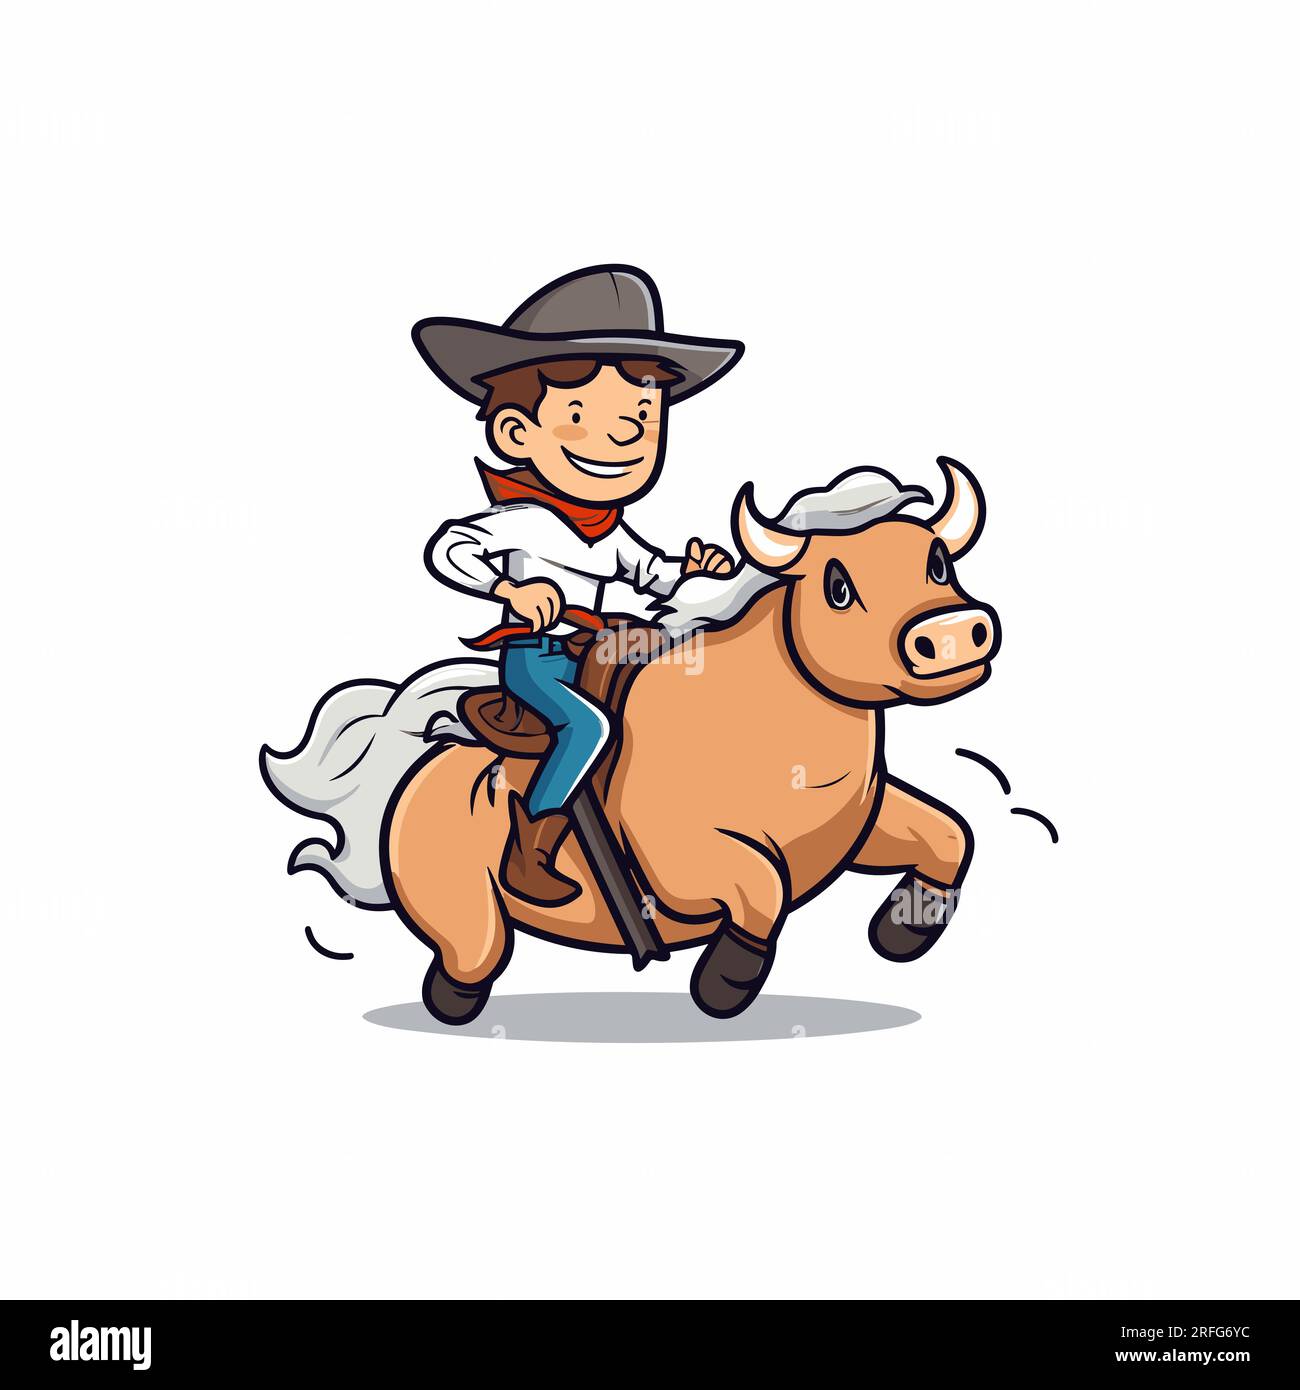 Rodeo. Cowboy reitet einen Bullen. Cowboy reitet auf einem Bullen, handgezeichnet, Comic-Illustration. Vektor-Doodle-Zeichentrickfilm-Illustration Stock Vektor